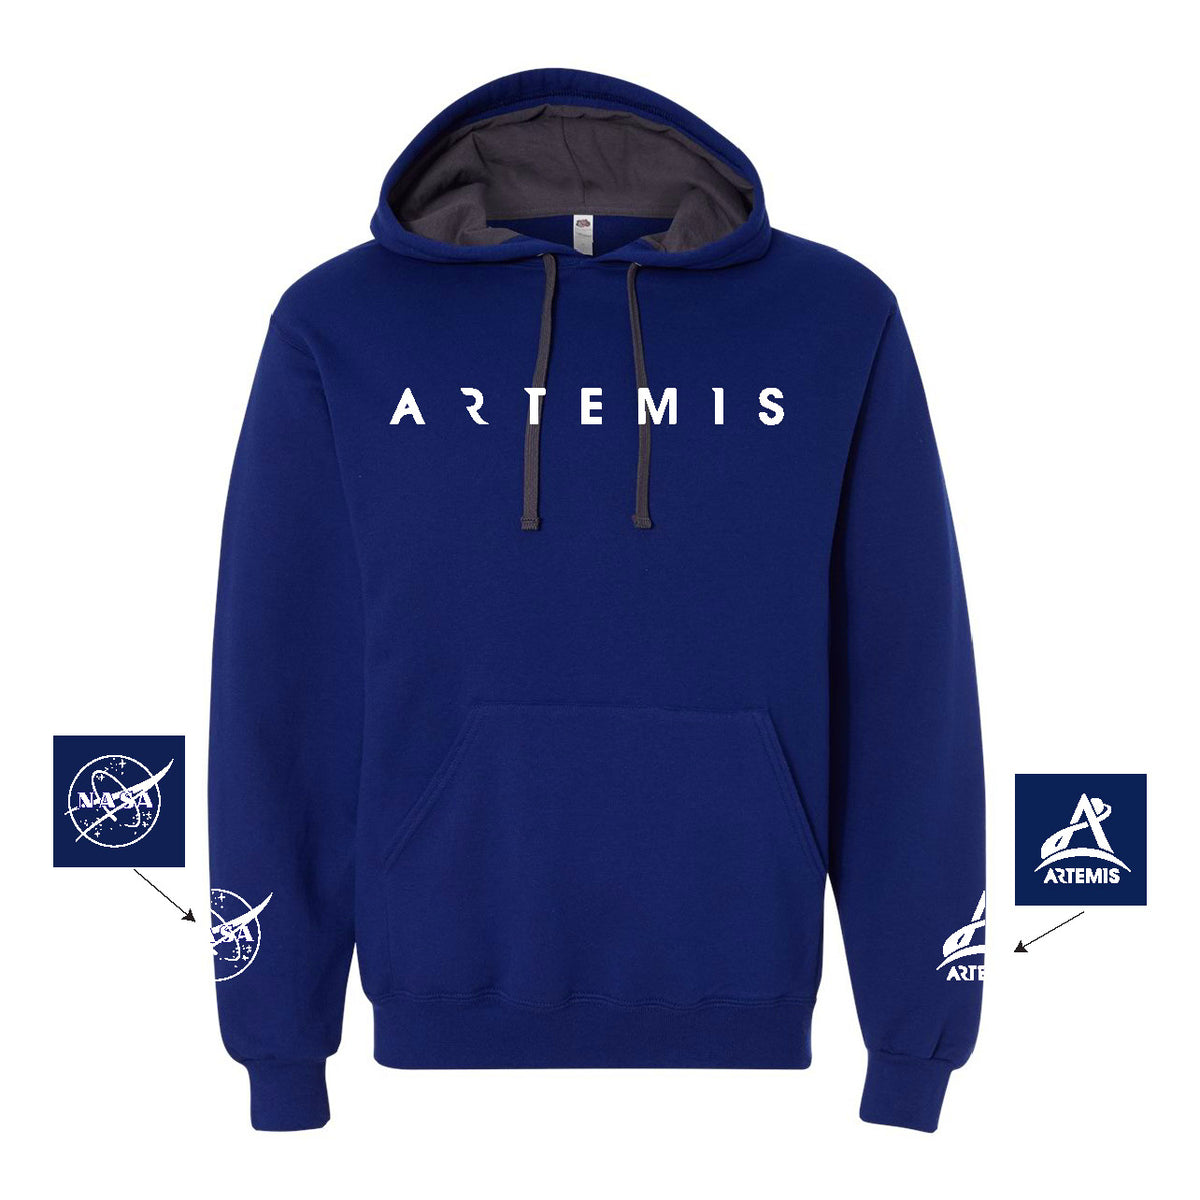 Artemis Generation Hooded Sweatshirt